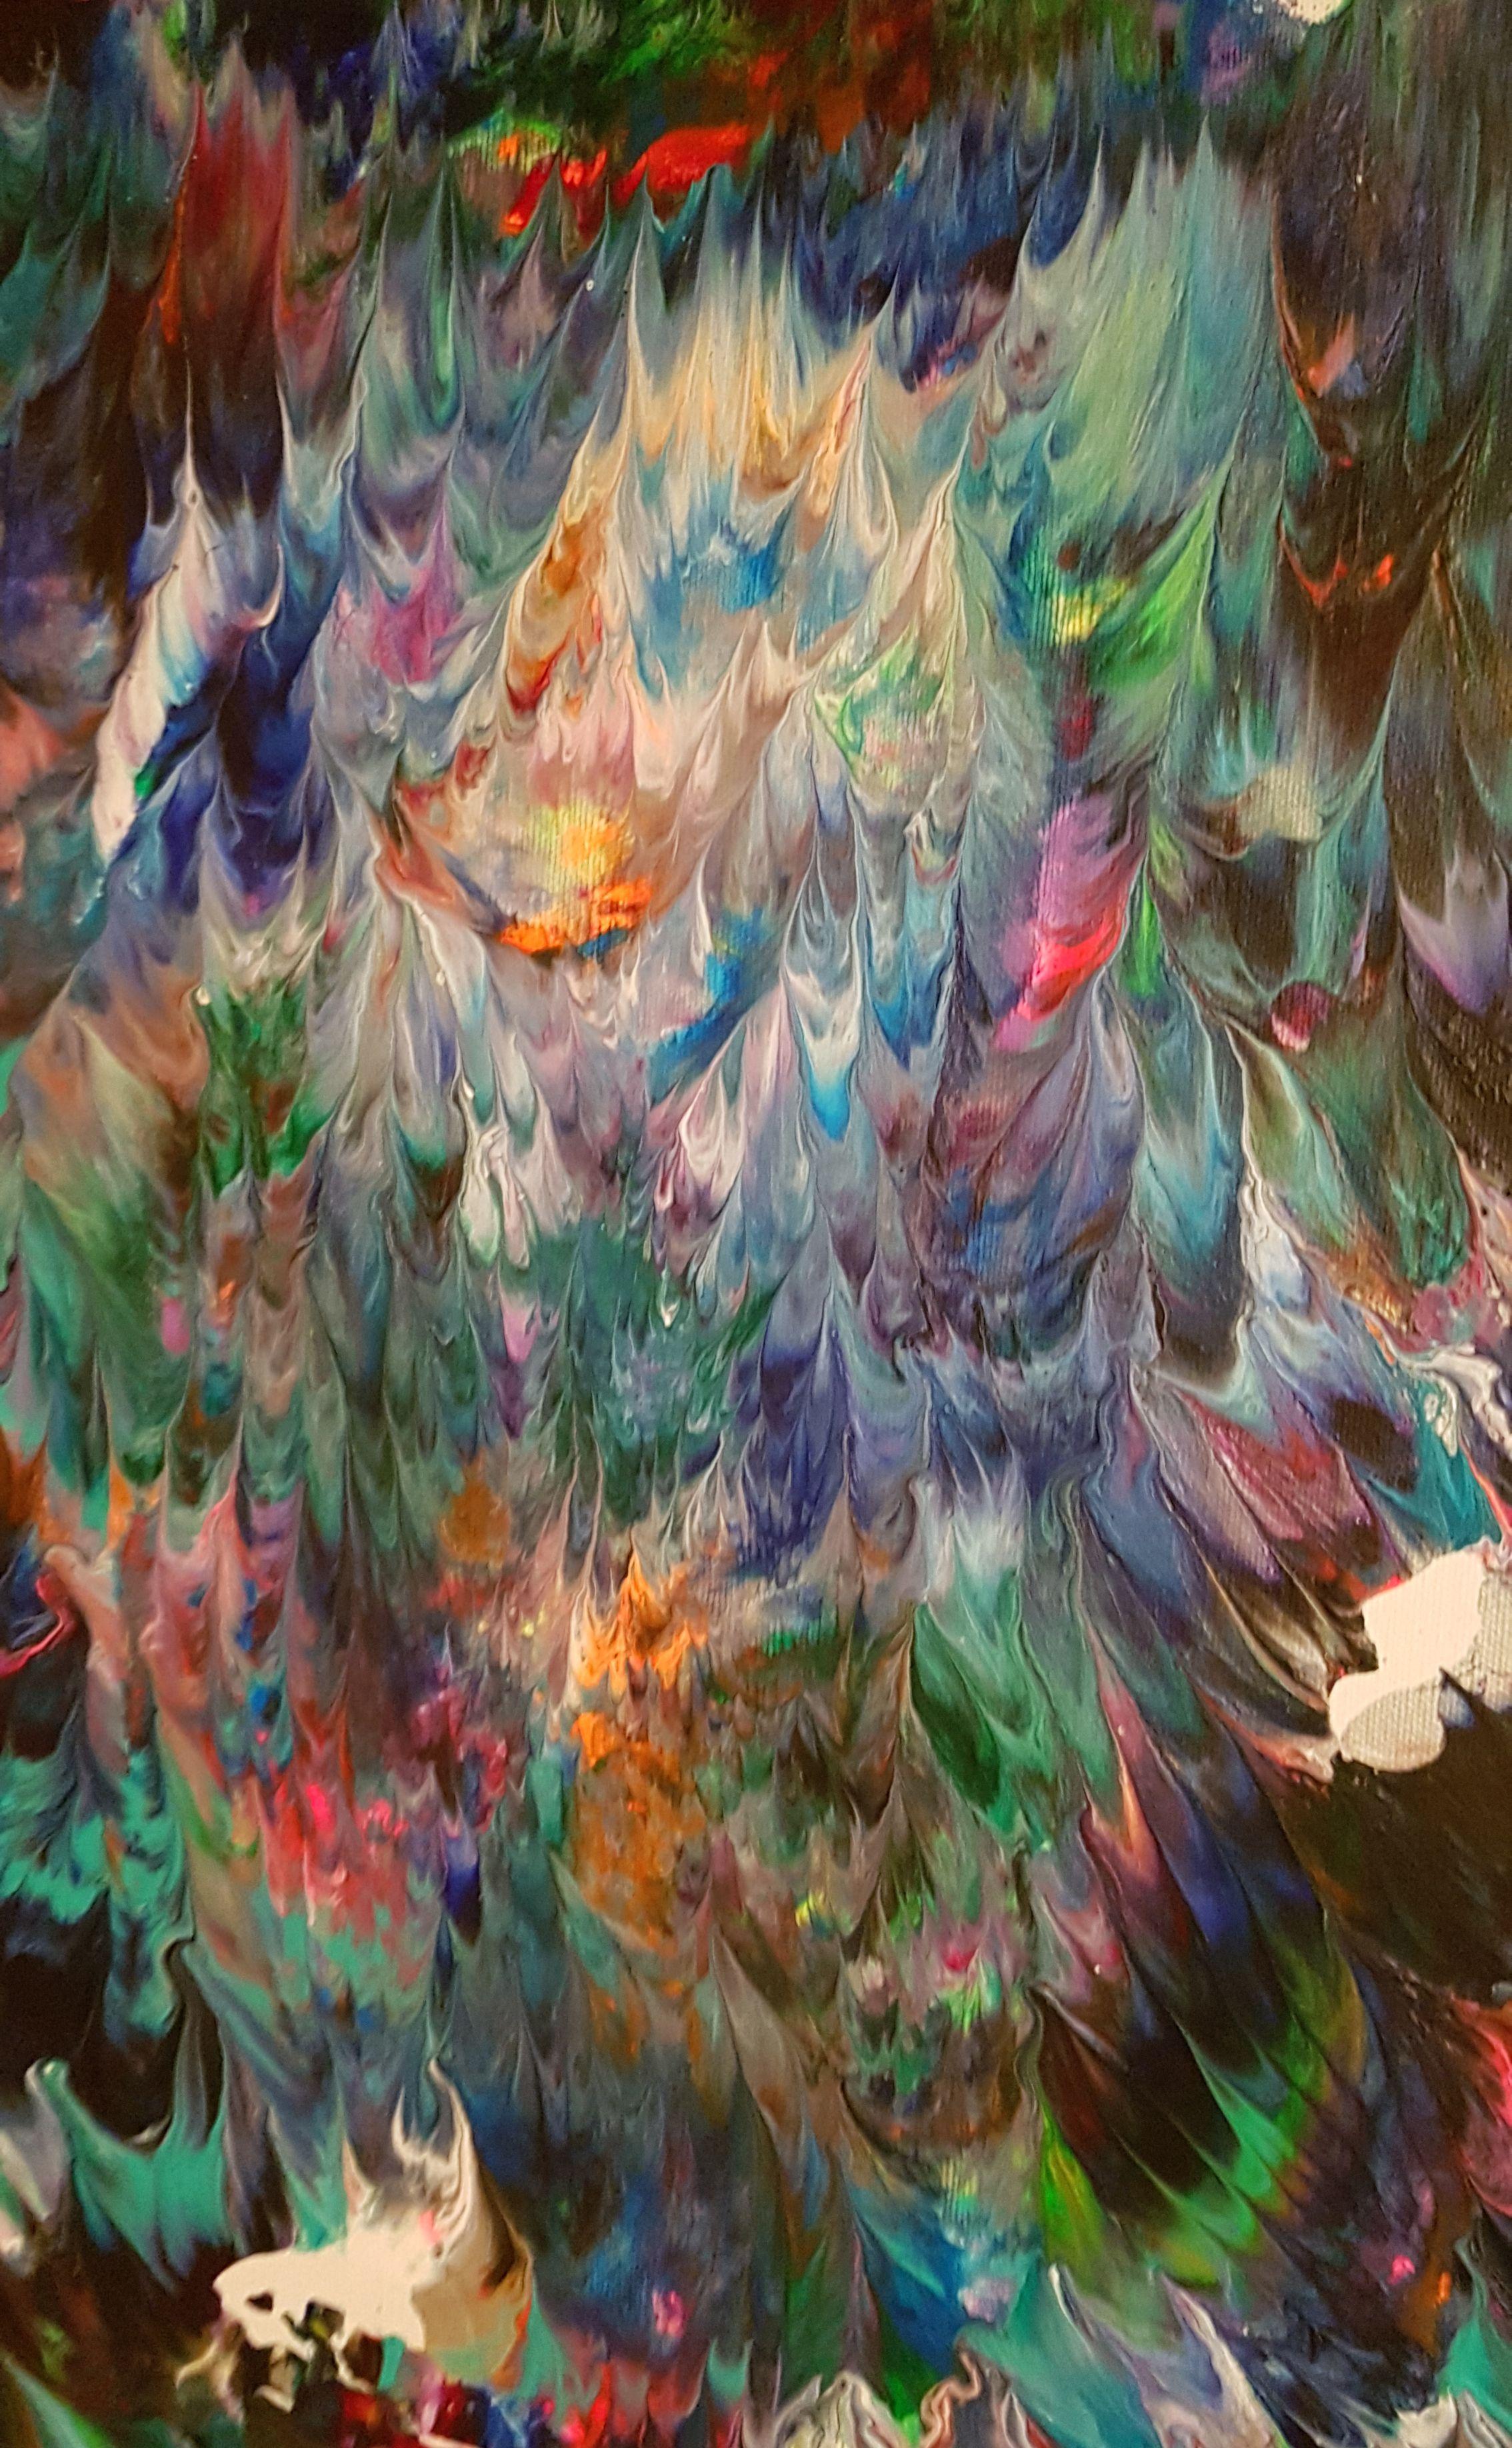 Das abstrakte expressionistische Gemälde Free Spirit No. 6 zeichnet sich durch kräftige Blautöne aus: Dunkles Marineblau, Violett und Türkis verschmelzen zu wilden Formen. Leuchtende Farben wie fluoreszierendes Orange, Pink und Grün werden durch